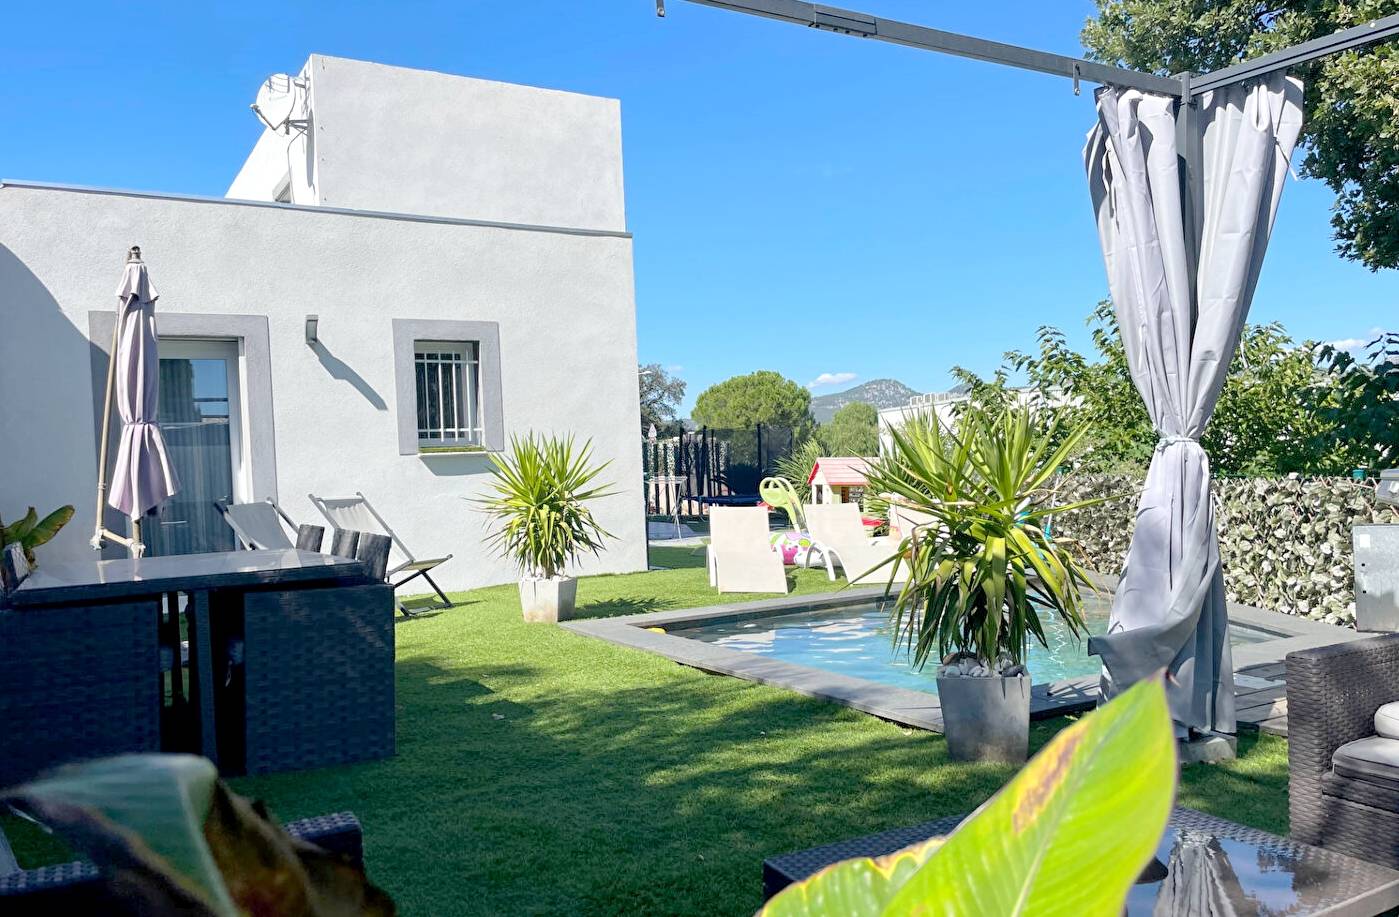 Maison contemporaine avec piscine à vendre à La Seyne, quartier Léry